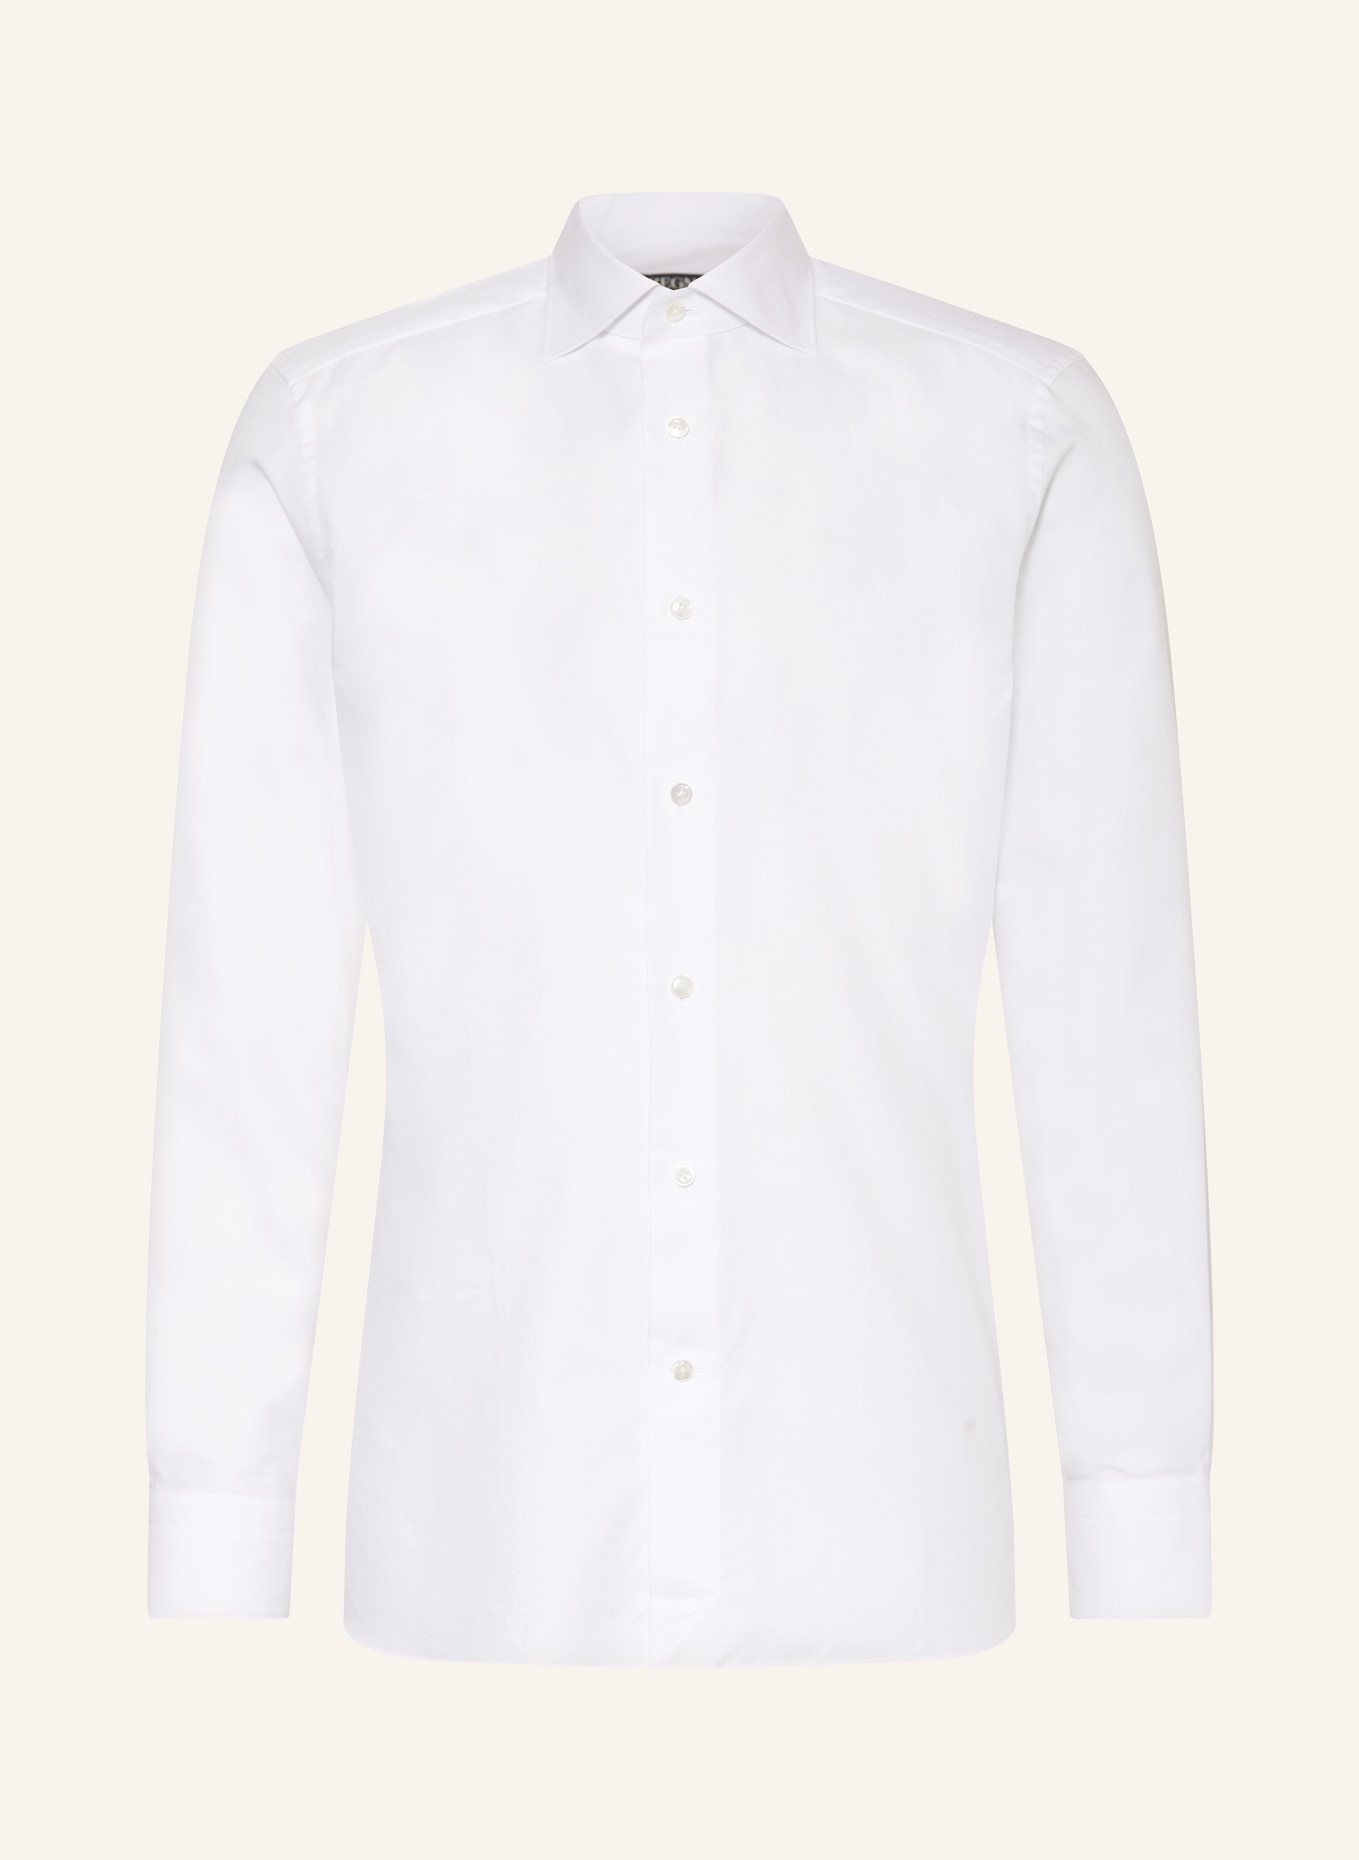 ZEGNA Shirt regular fit, Color: WHITE (Image 1)